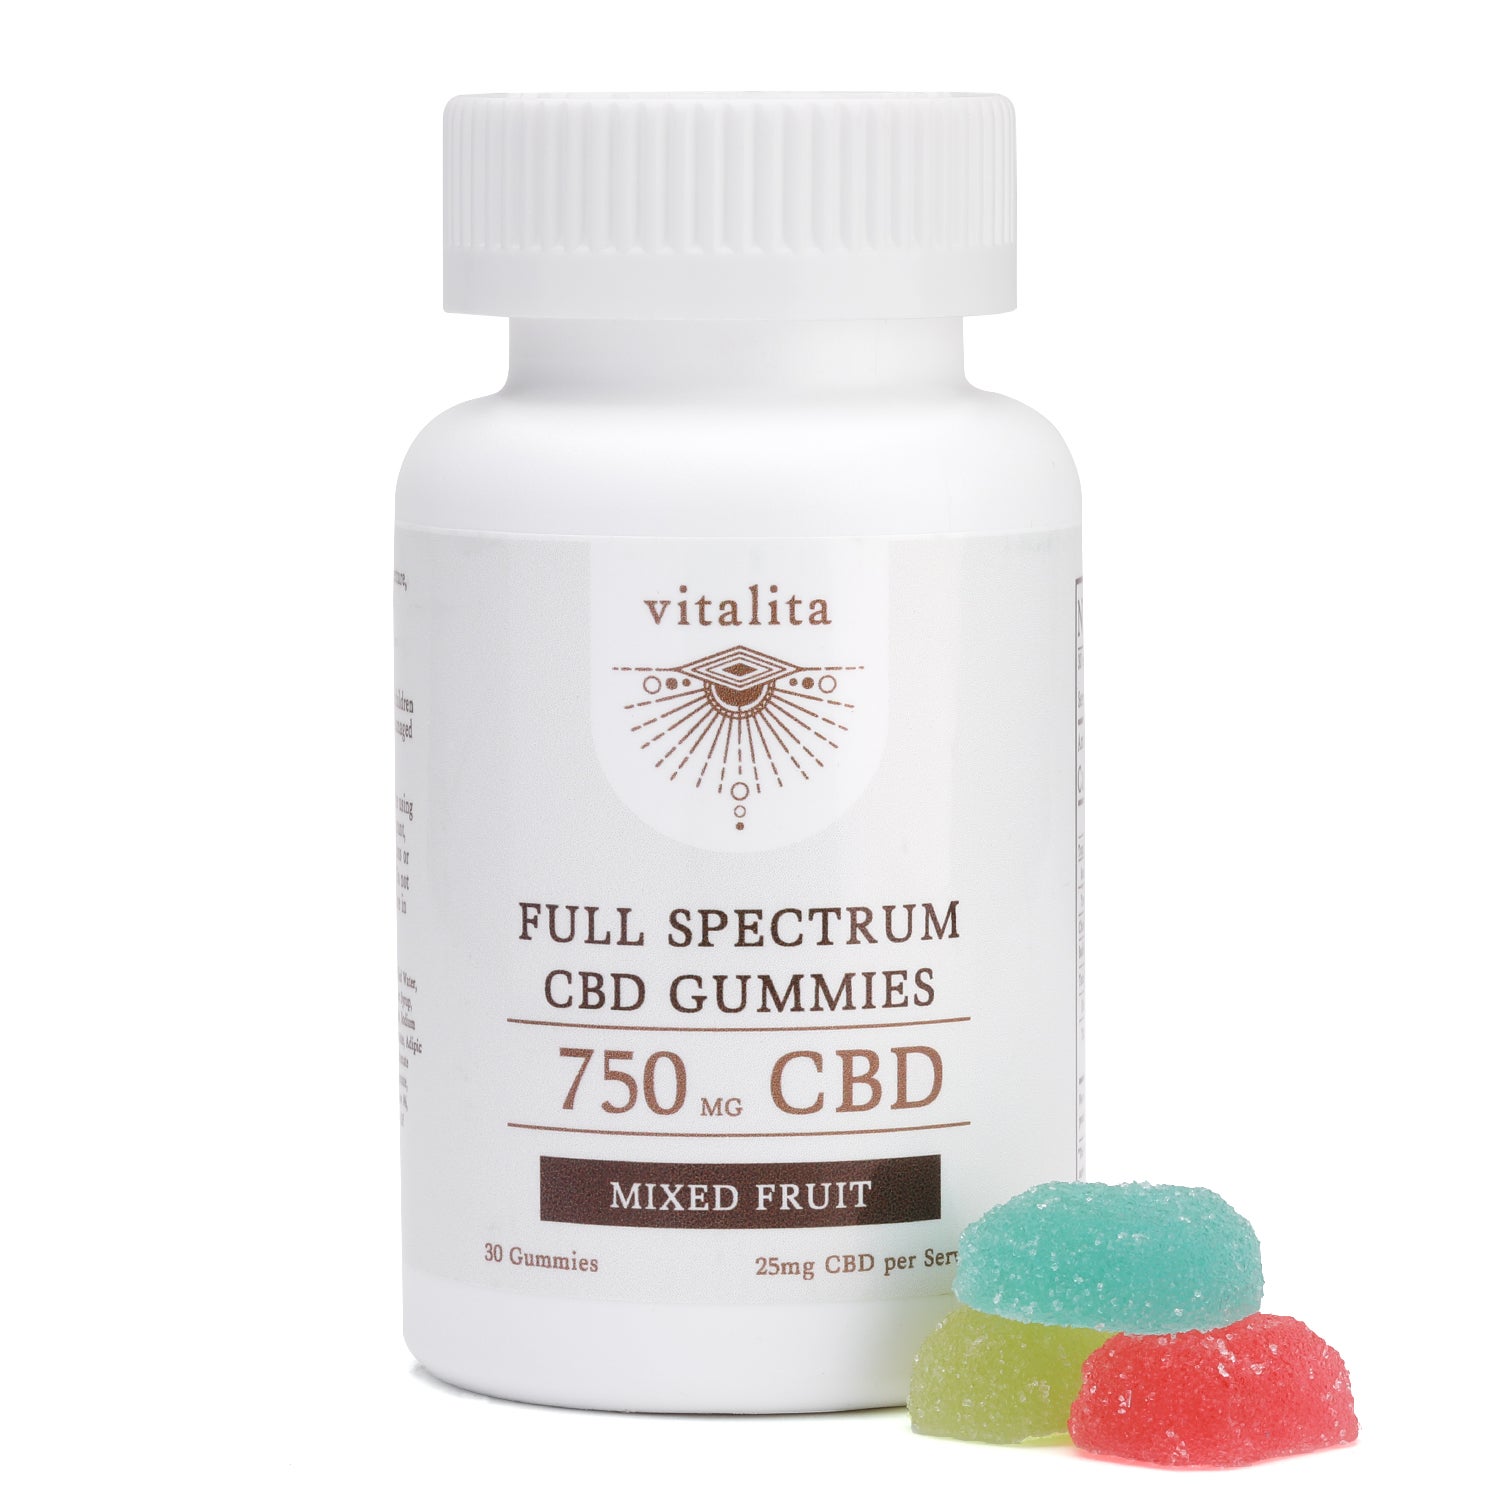 Vitalita-CBD Full Spectrum Gummies-750mg